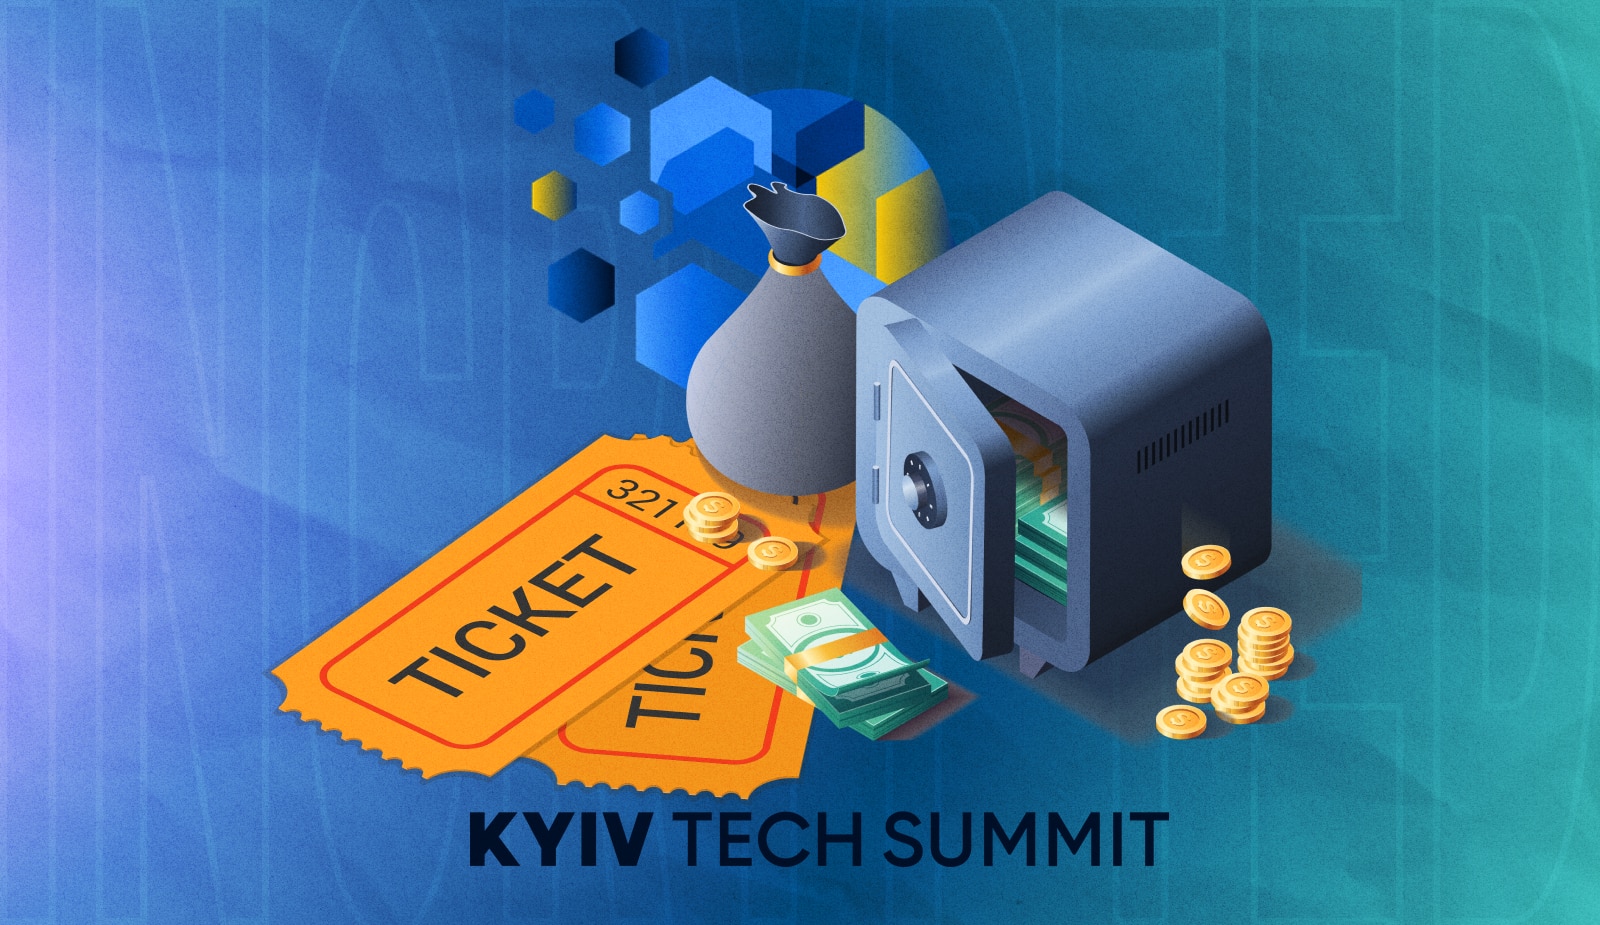 Билет за донат: Unchain.Fund раздает приглашения на Kyiv Tech Summit. Заглавный коллаж новости.